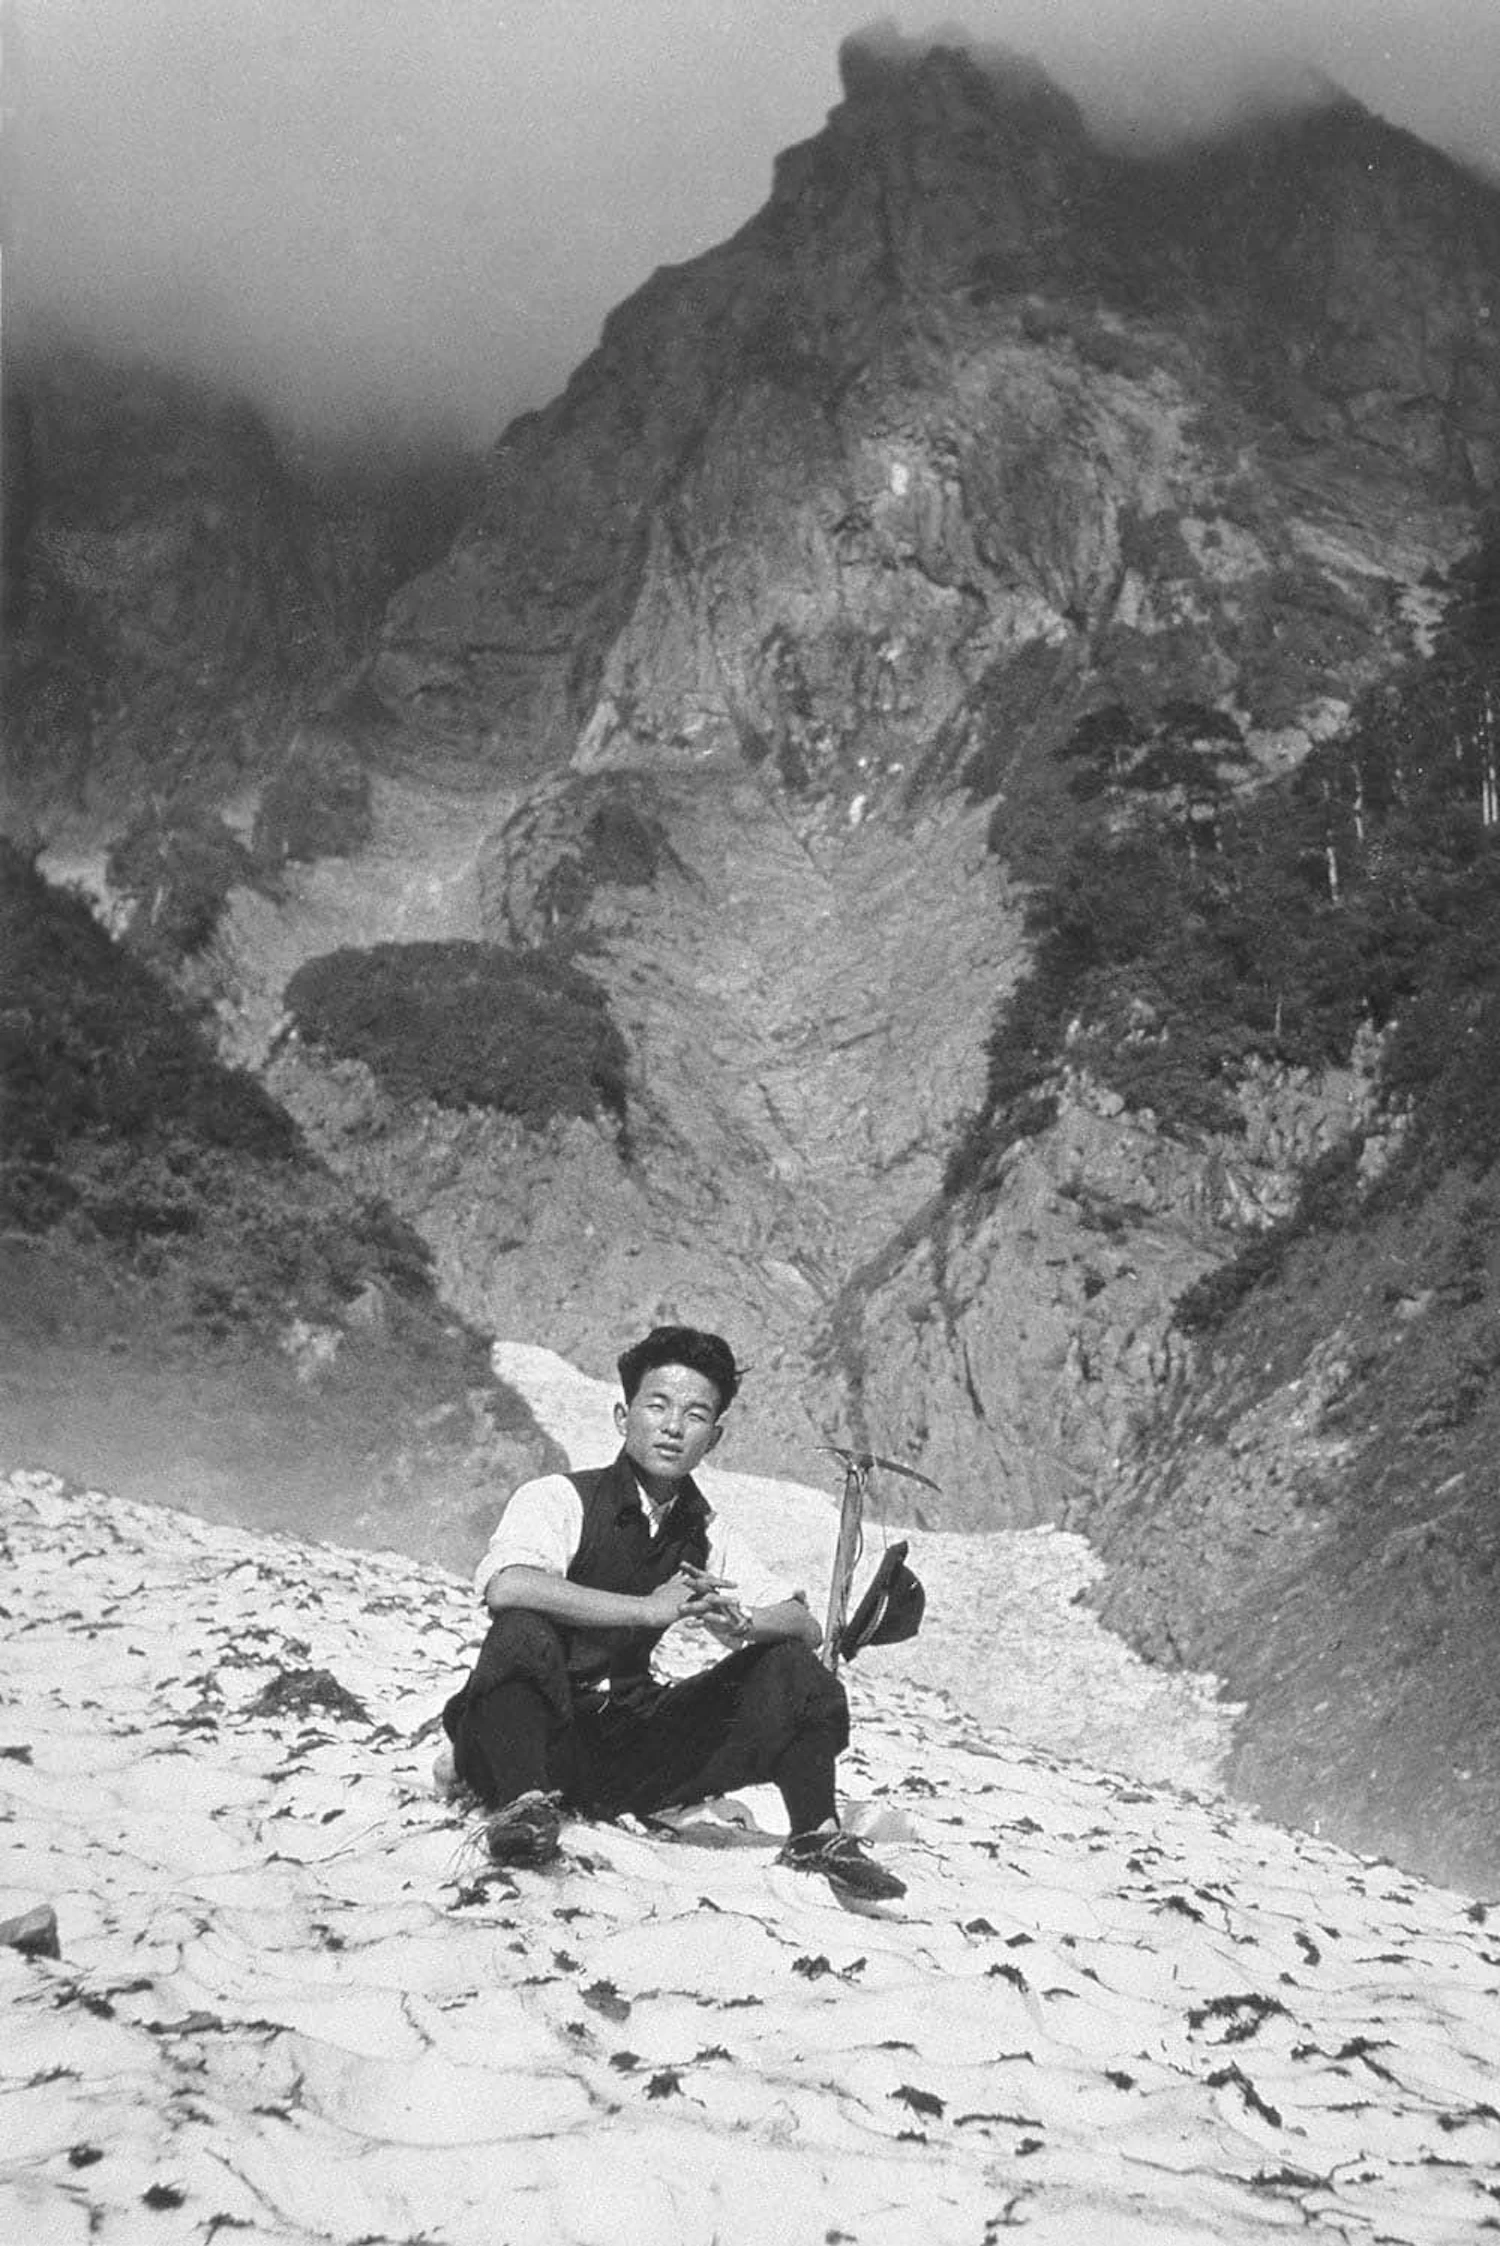 創業者、山井幸雄氏。谷川岳をこよなく愛した登山家でもあった